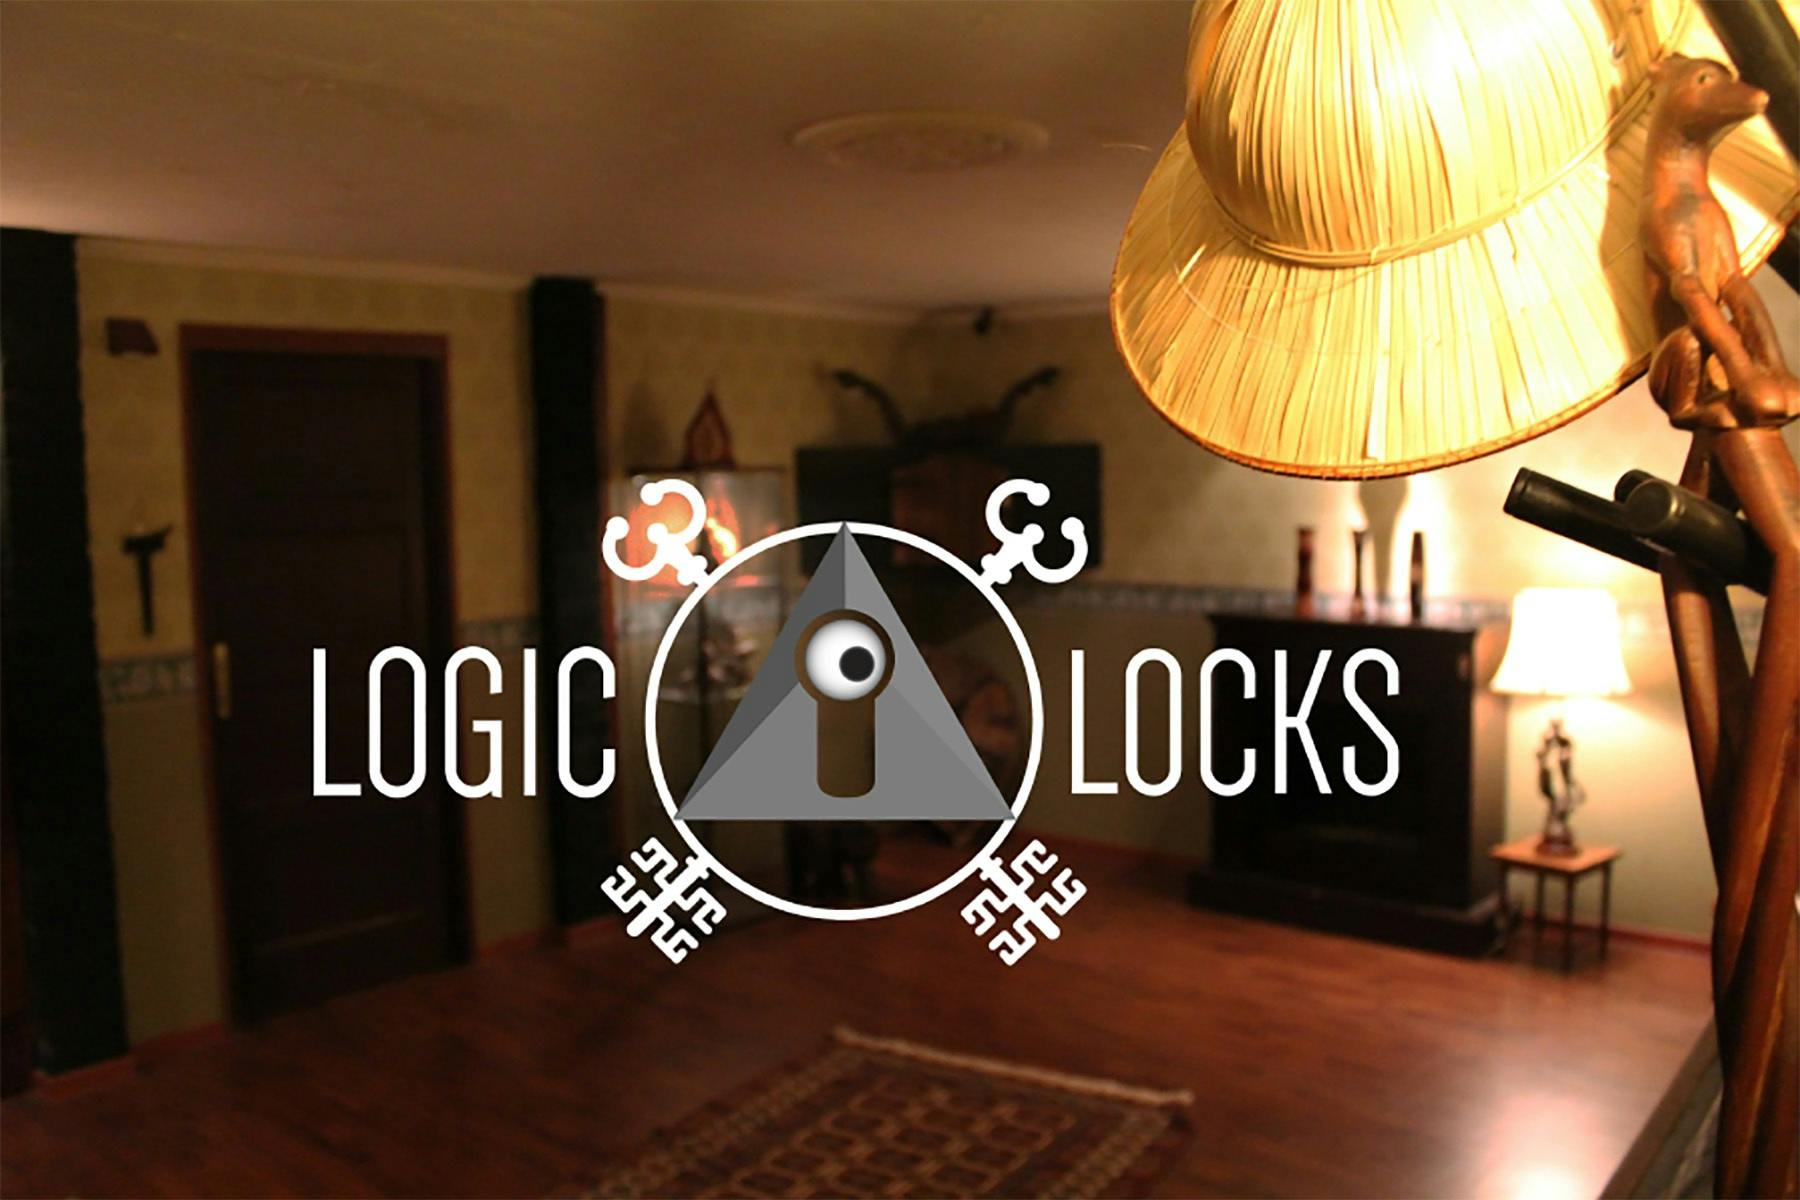 Logic Locks - 'The Secrets of Eliza's Heart'